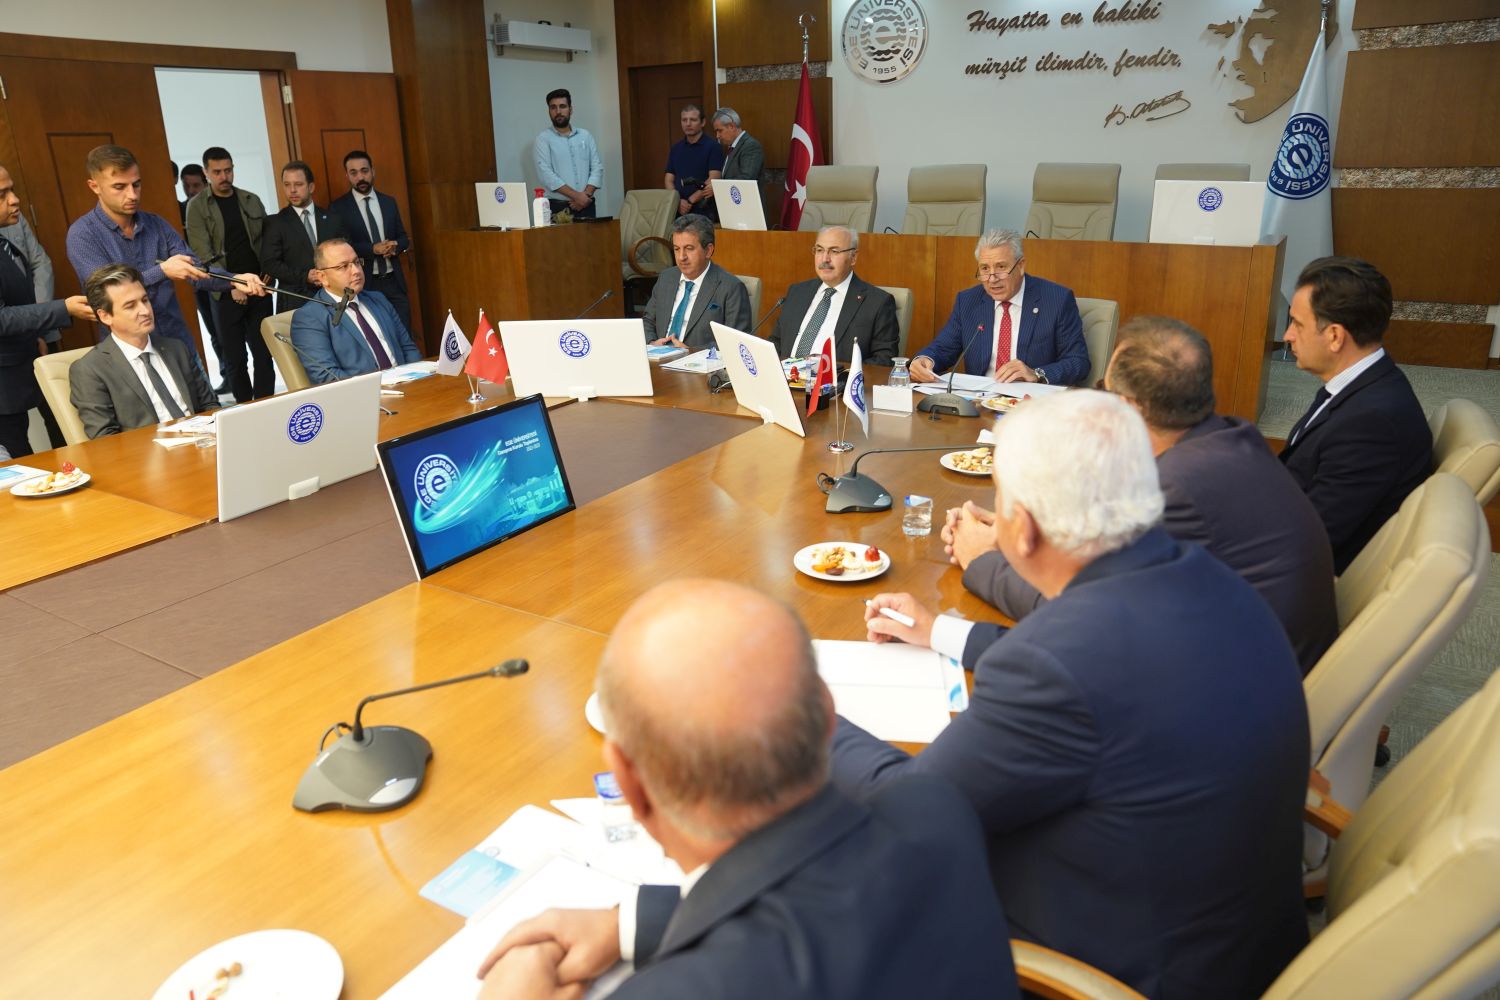 EÜ Danışma Kurulu, İzmir Valisi Yavuz Selim Köşger’in başkanlığında toplandı